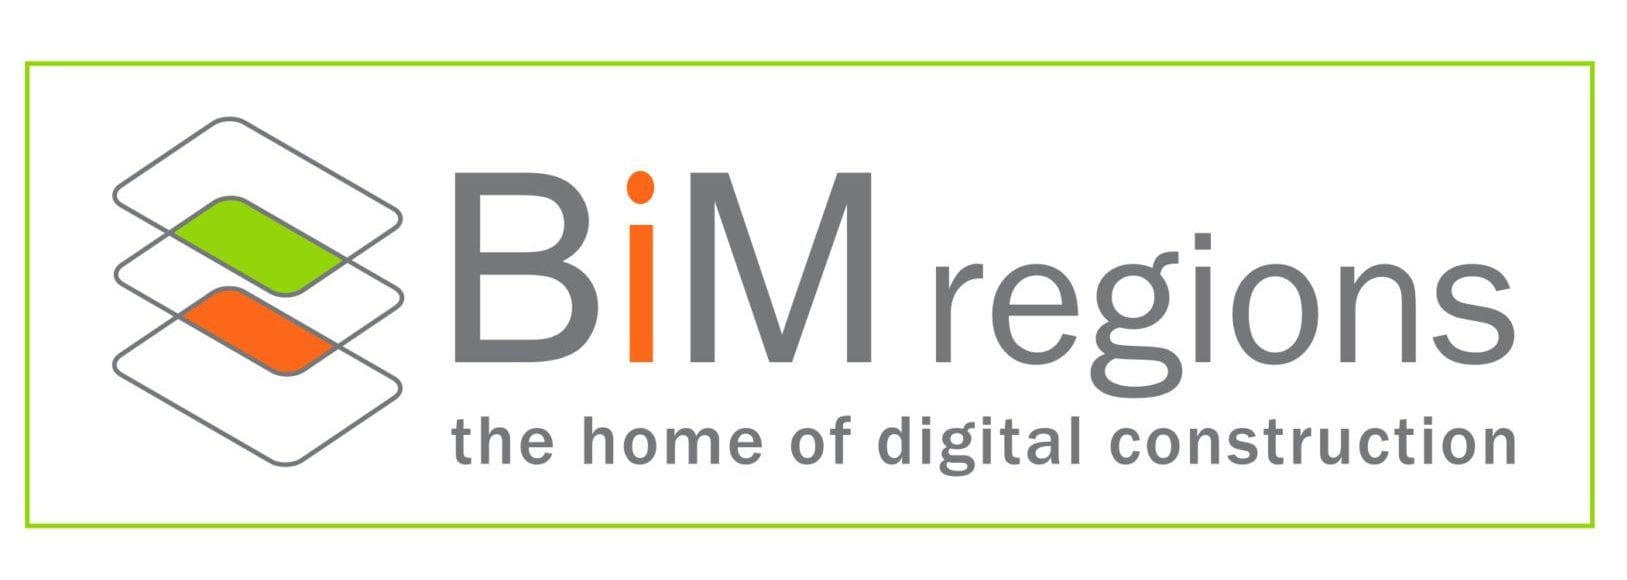 Regions Logo - BIM Regions Logo - Cita